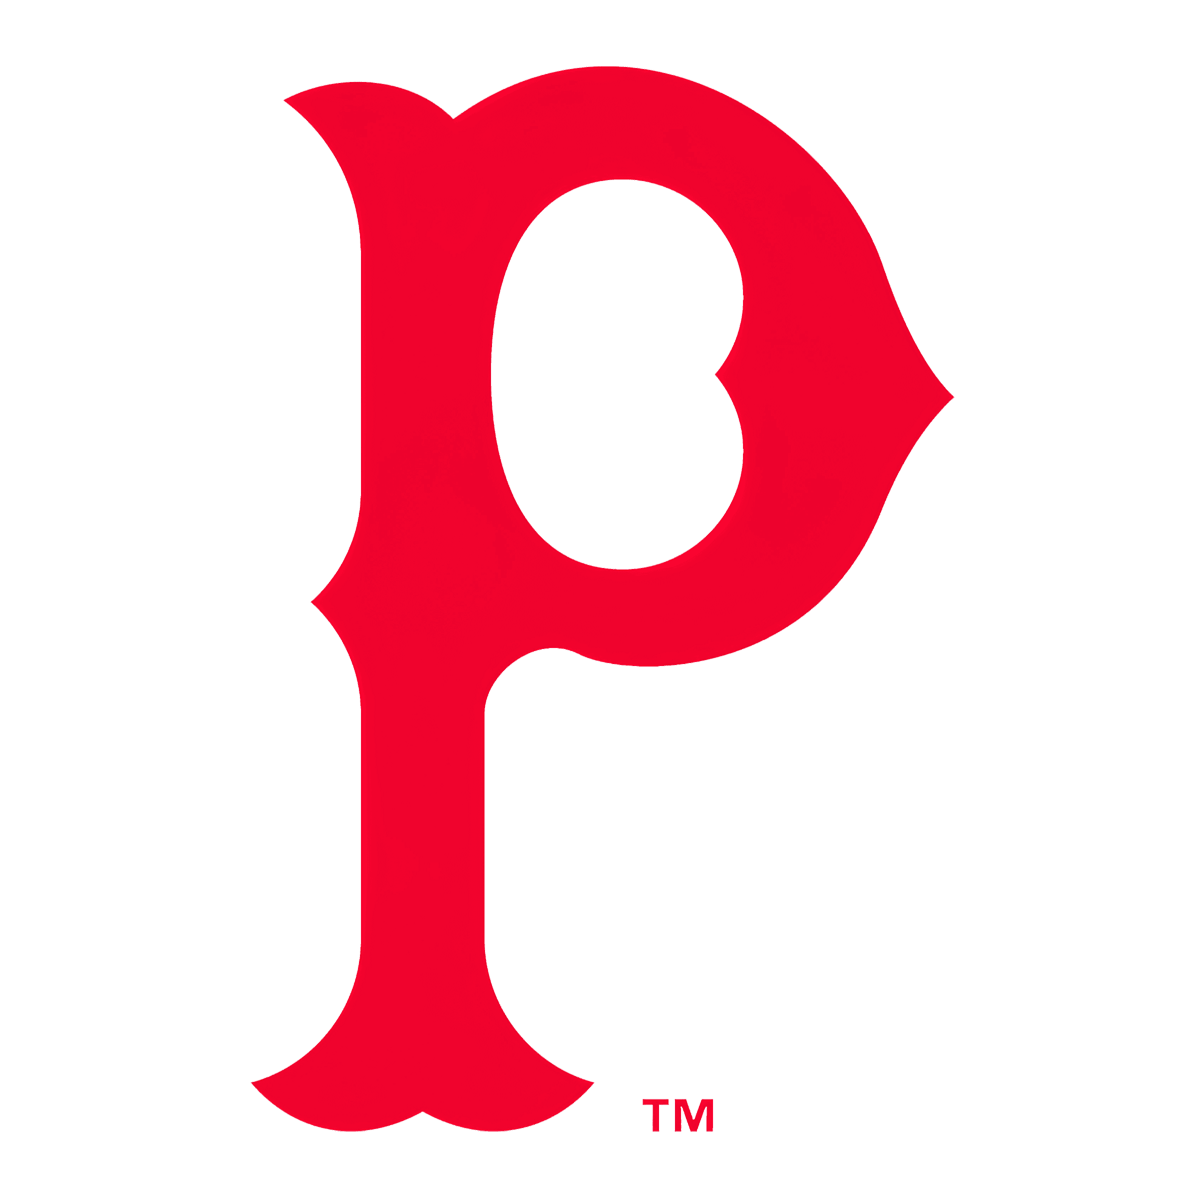 Pittsburgh Pirates Logo 1915-1919